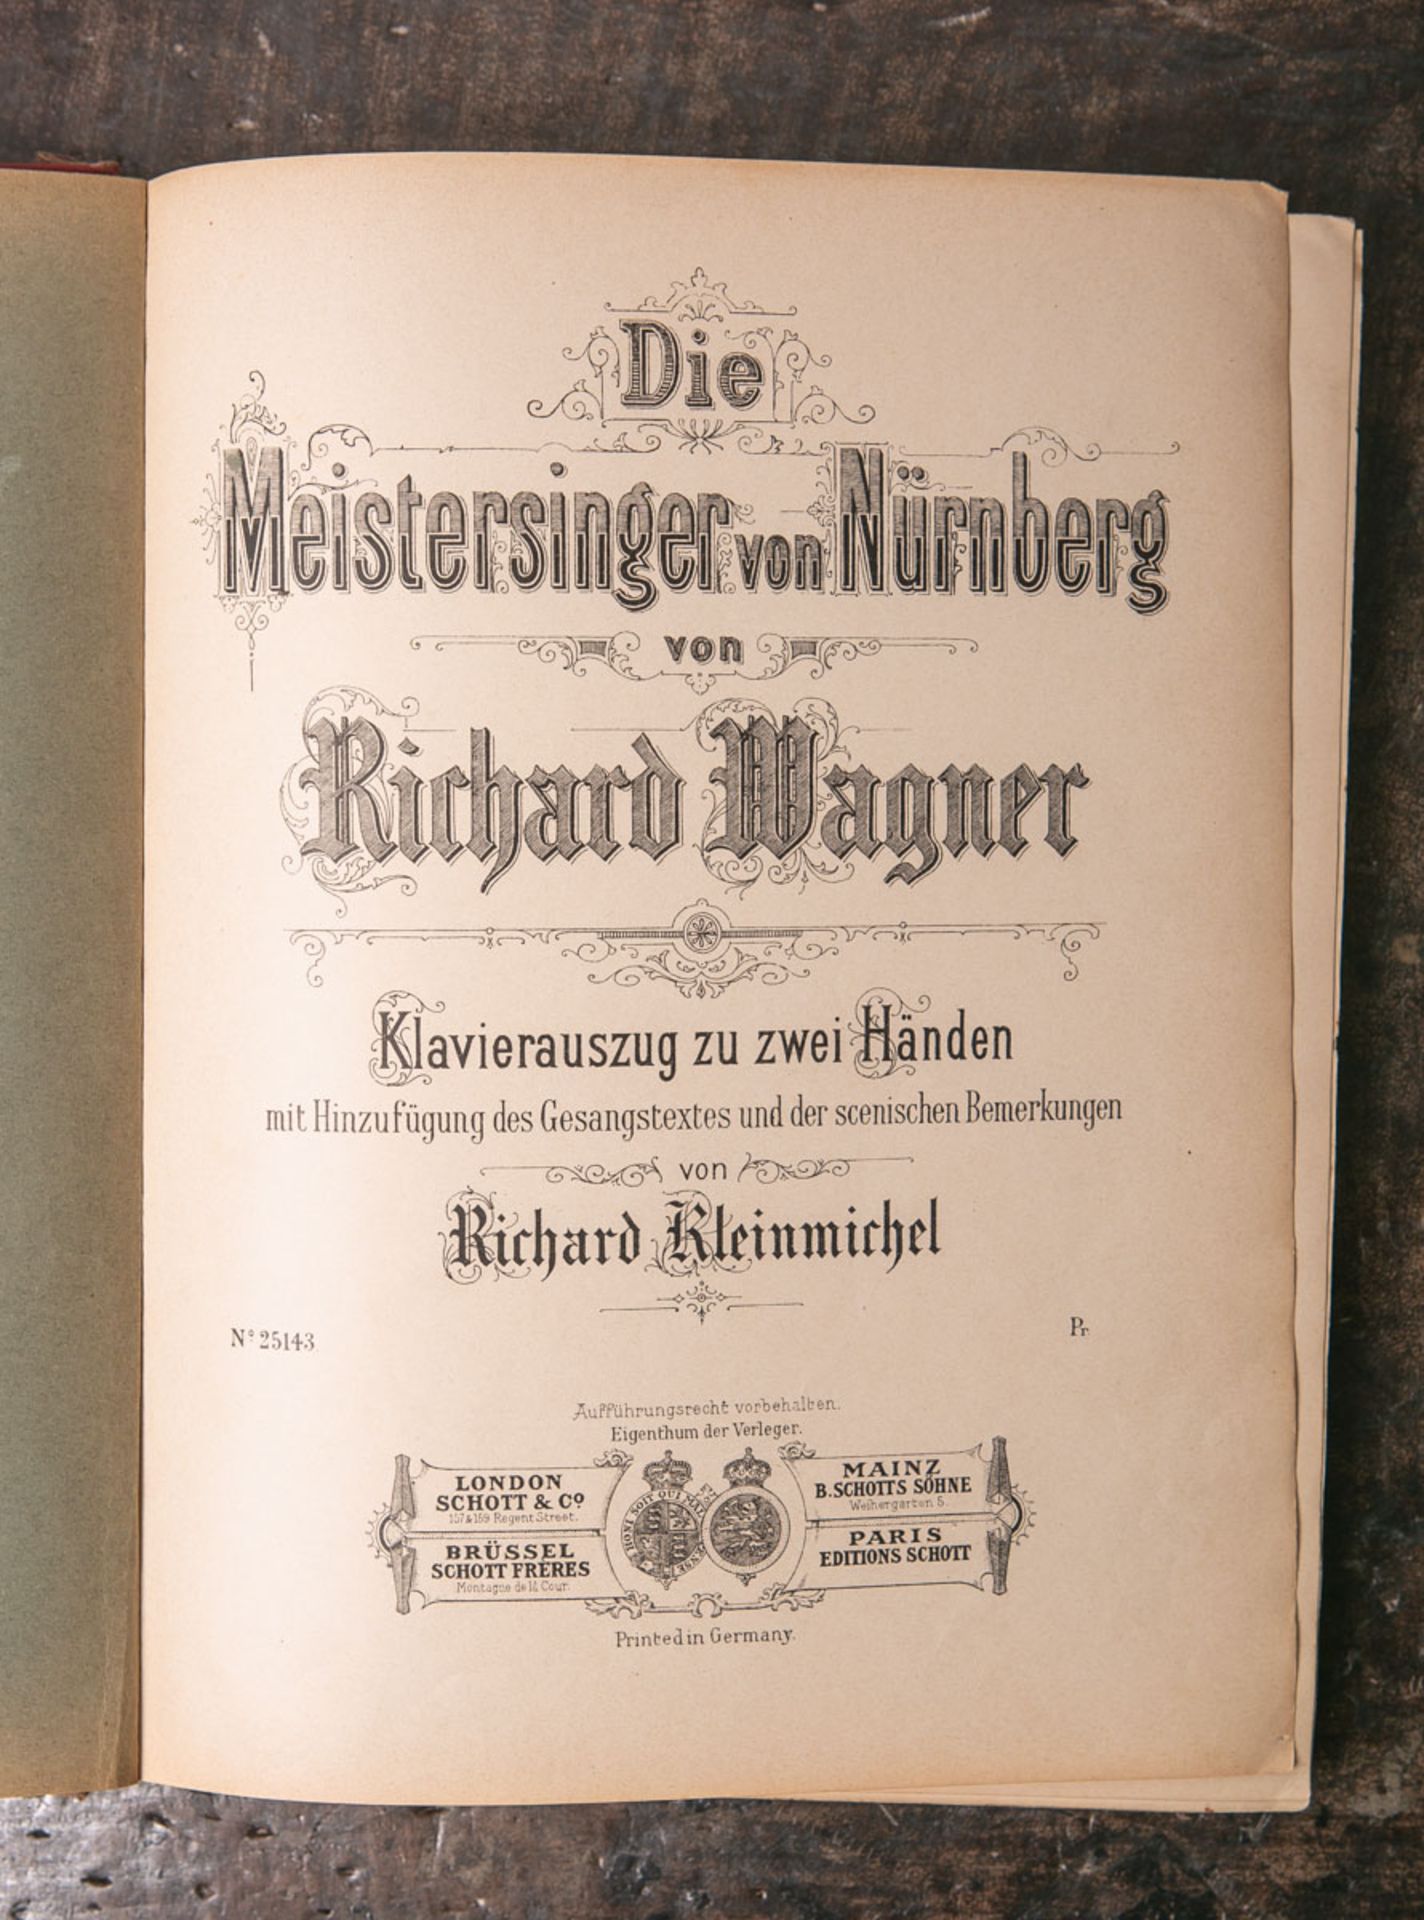 Kleinmichel, Richard (Hrsg.), "Die